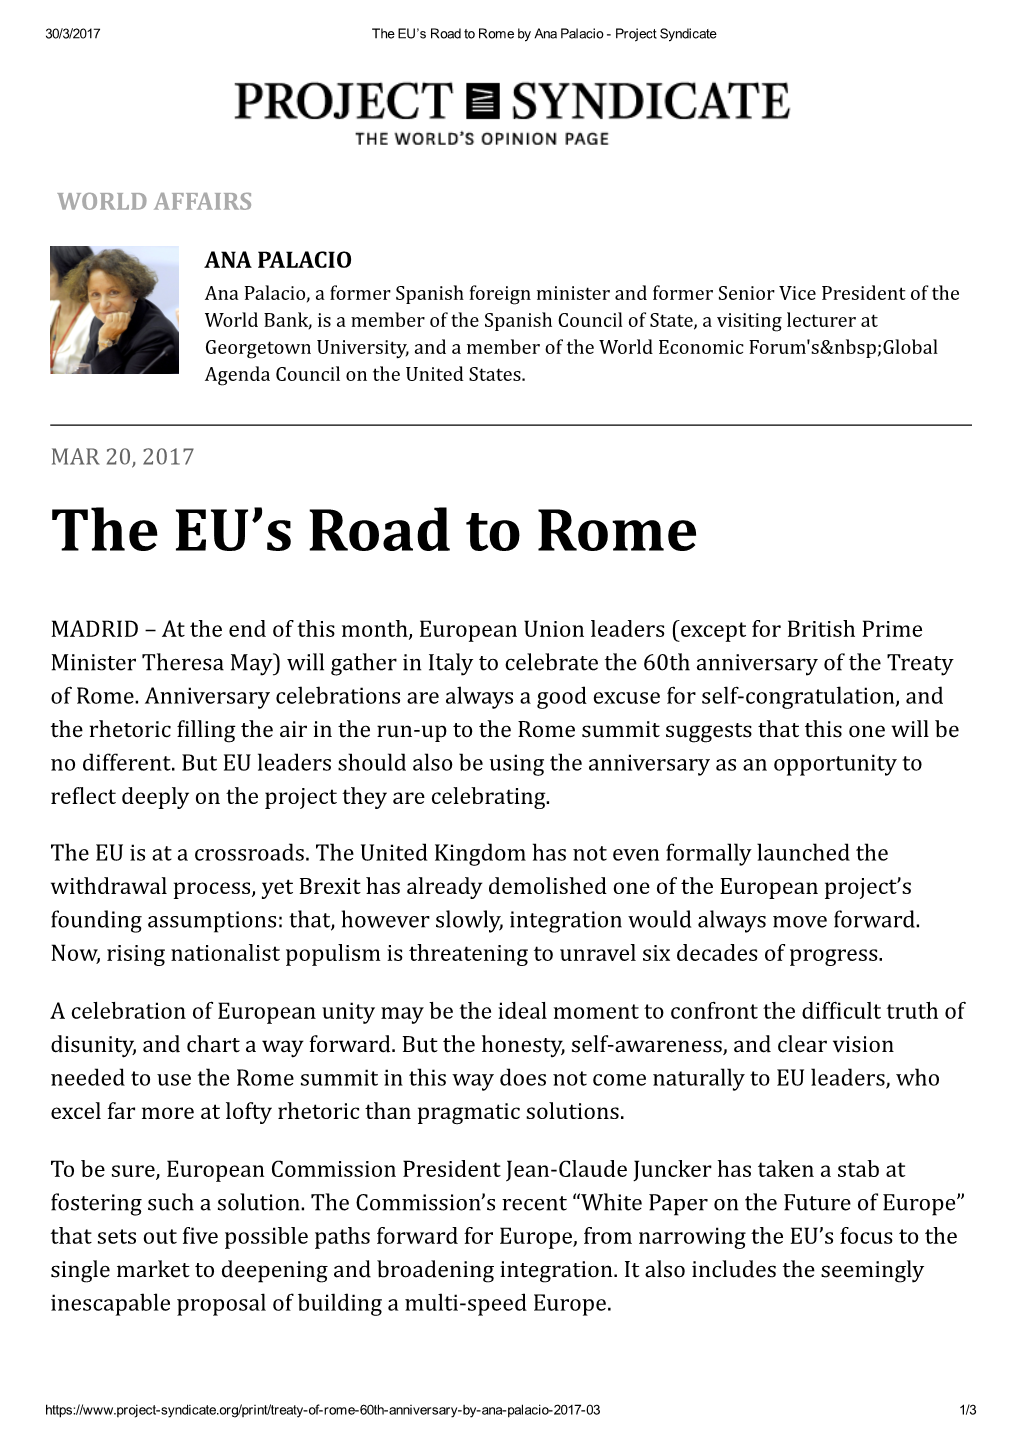 The EU's Road to Rome